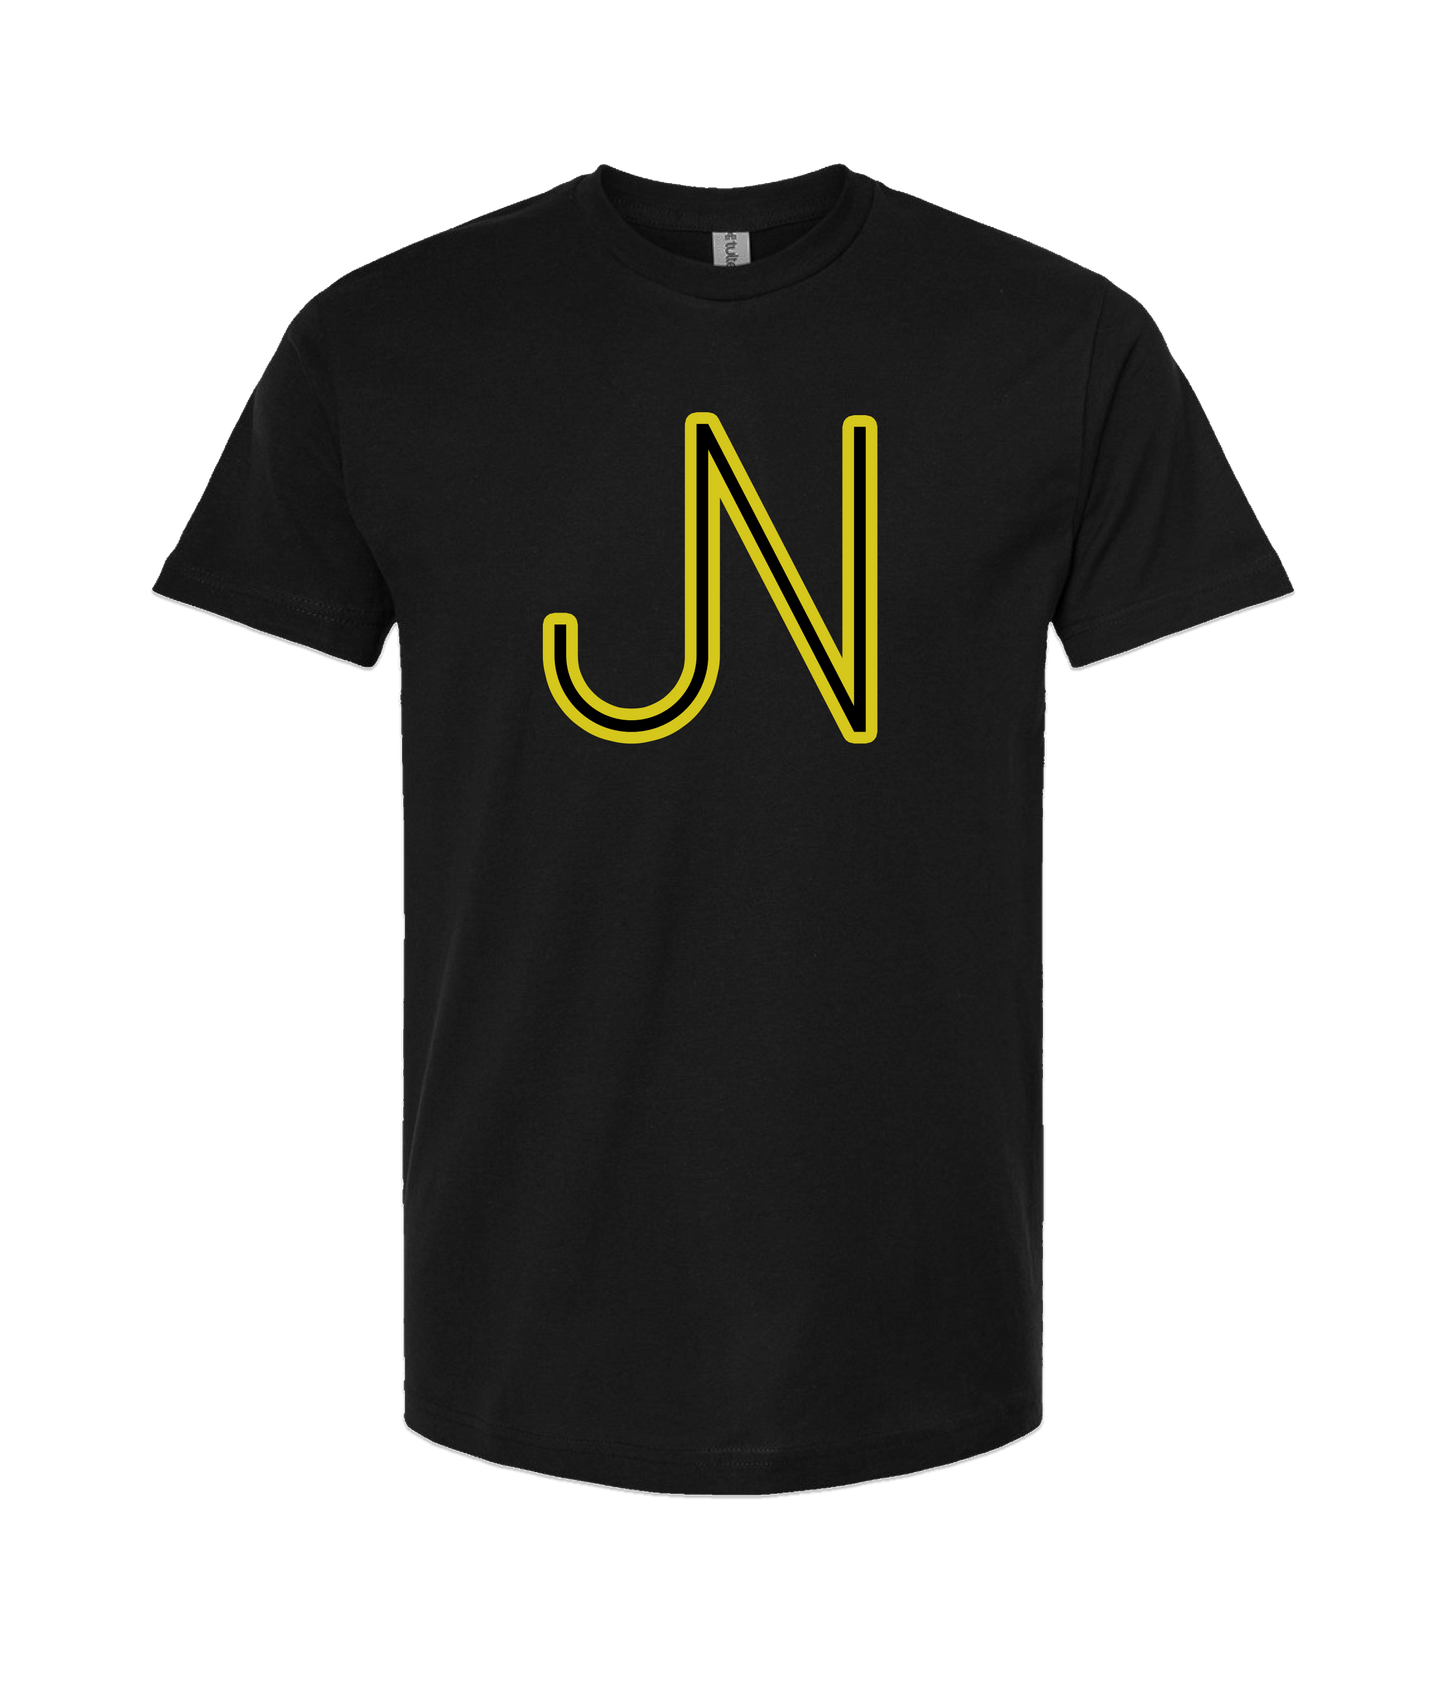 James Neary Music - JN (Yellow) - Black T Shirt